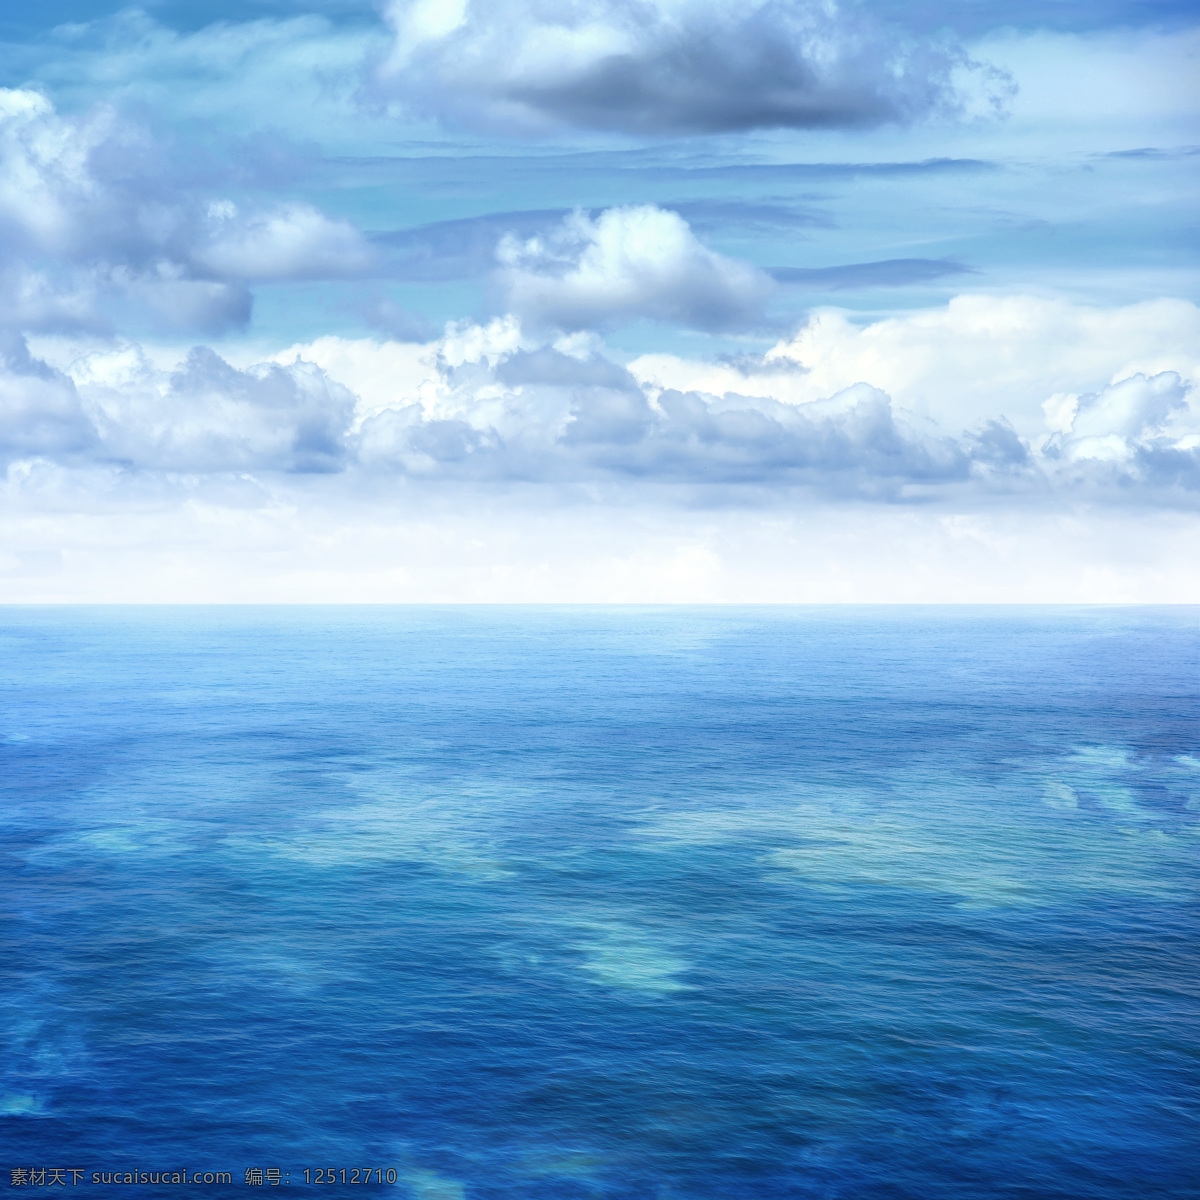 蓝天 白云 大海 风景 海 海边风景 海面景色 自然风景 海洋海边 大海图片 风景图片